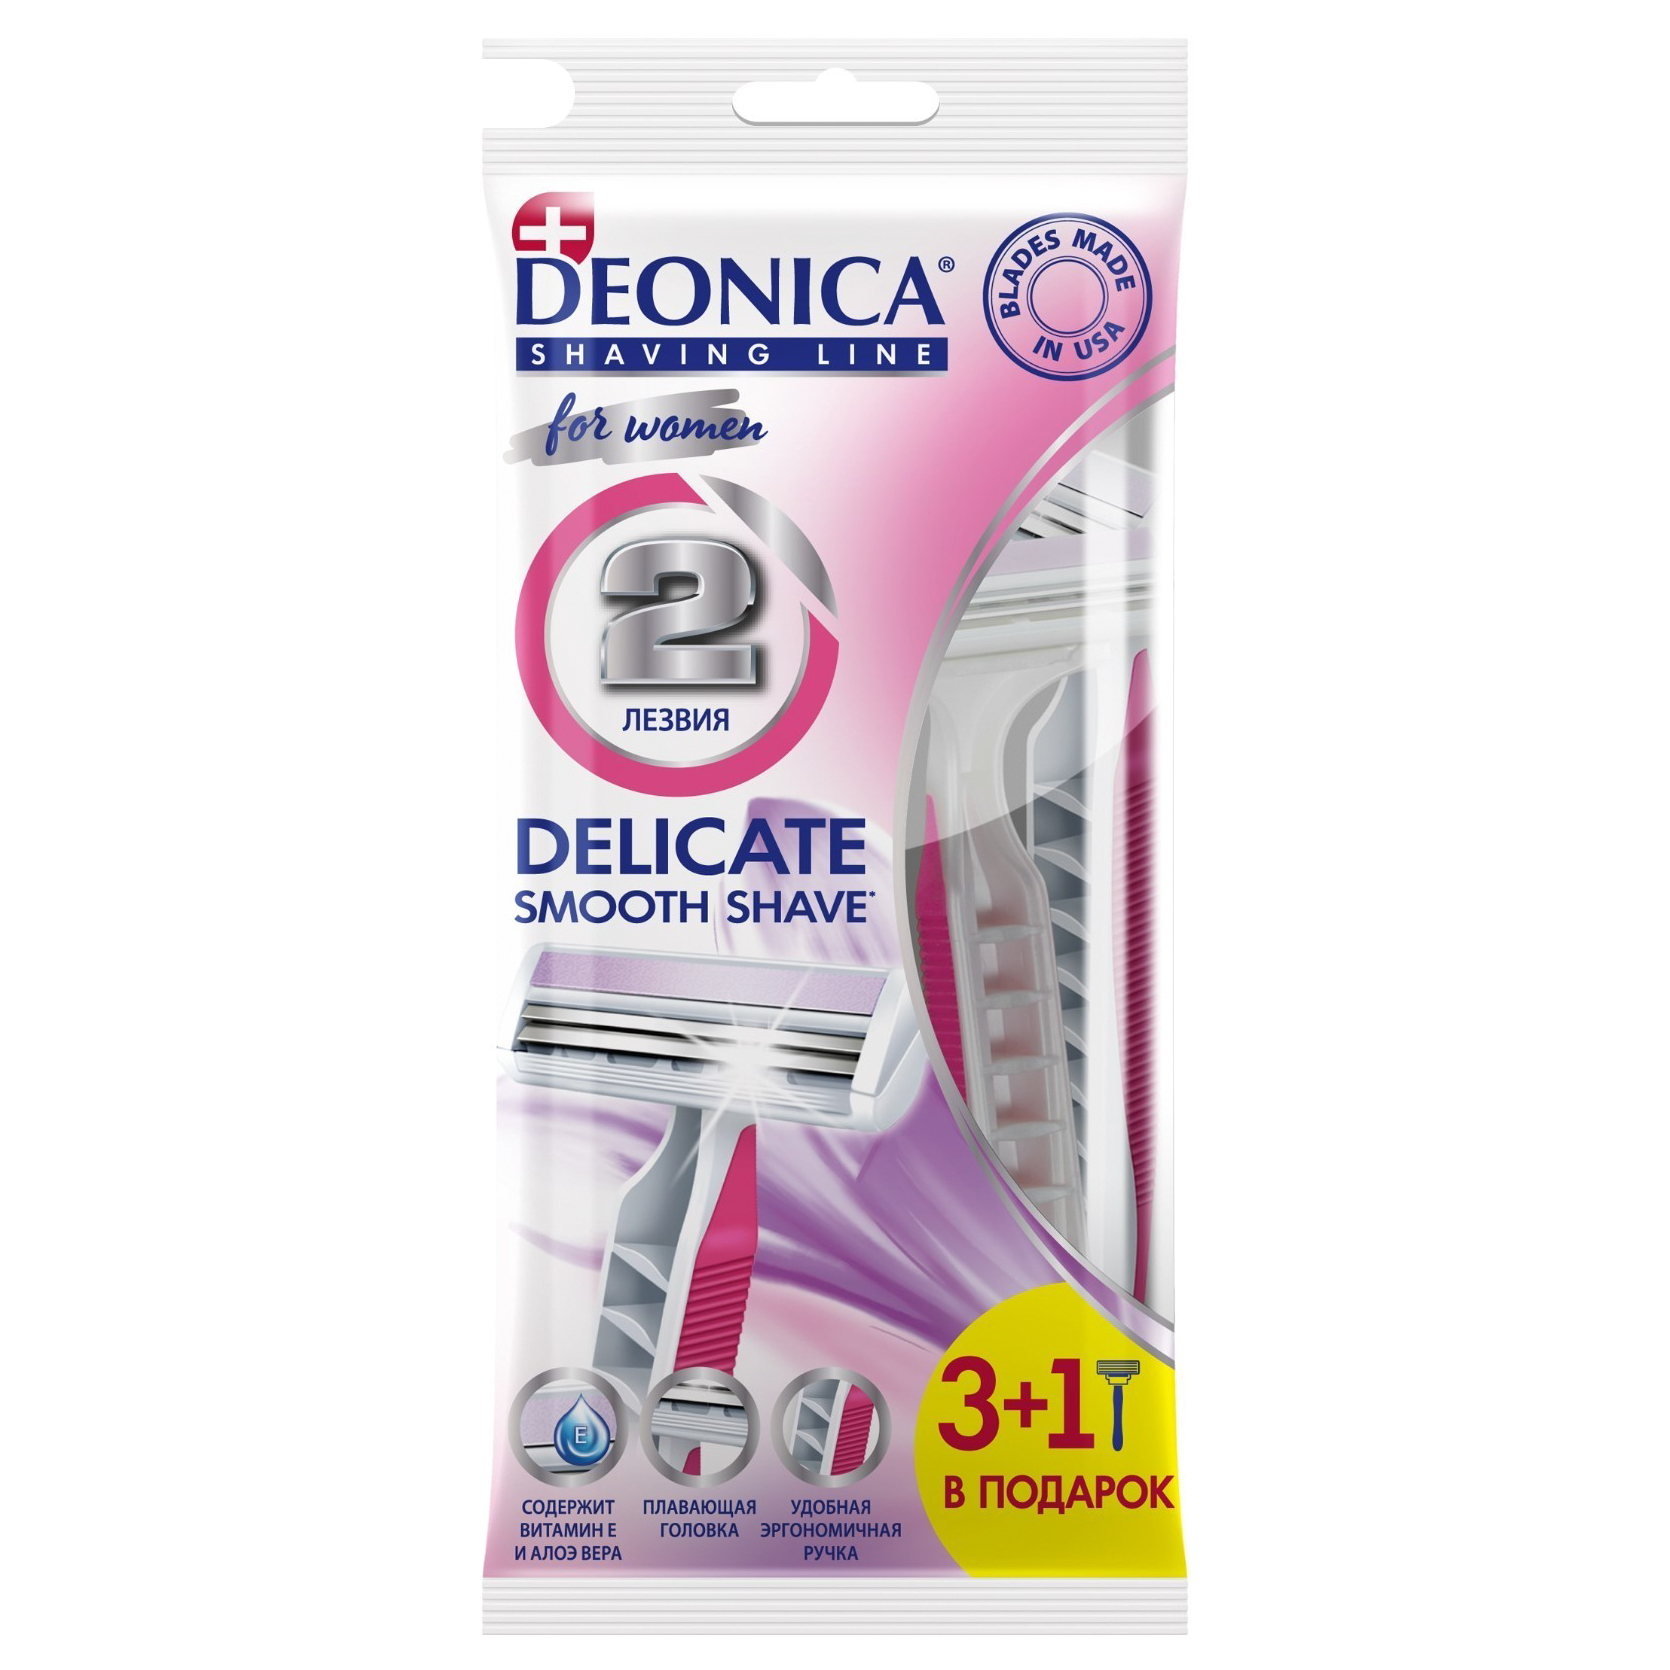 Станок для бритья одноразовый Deonica 2 For Women 3+1 шт toptech одноразовый станок с 2 лезвиями 5